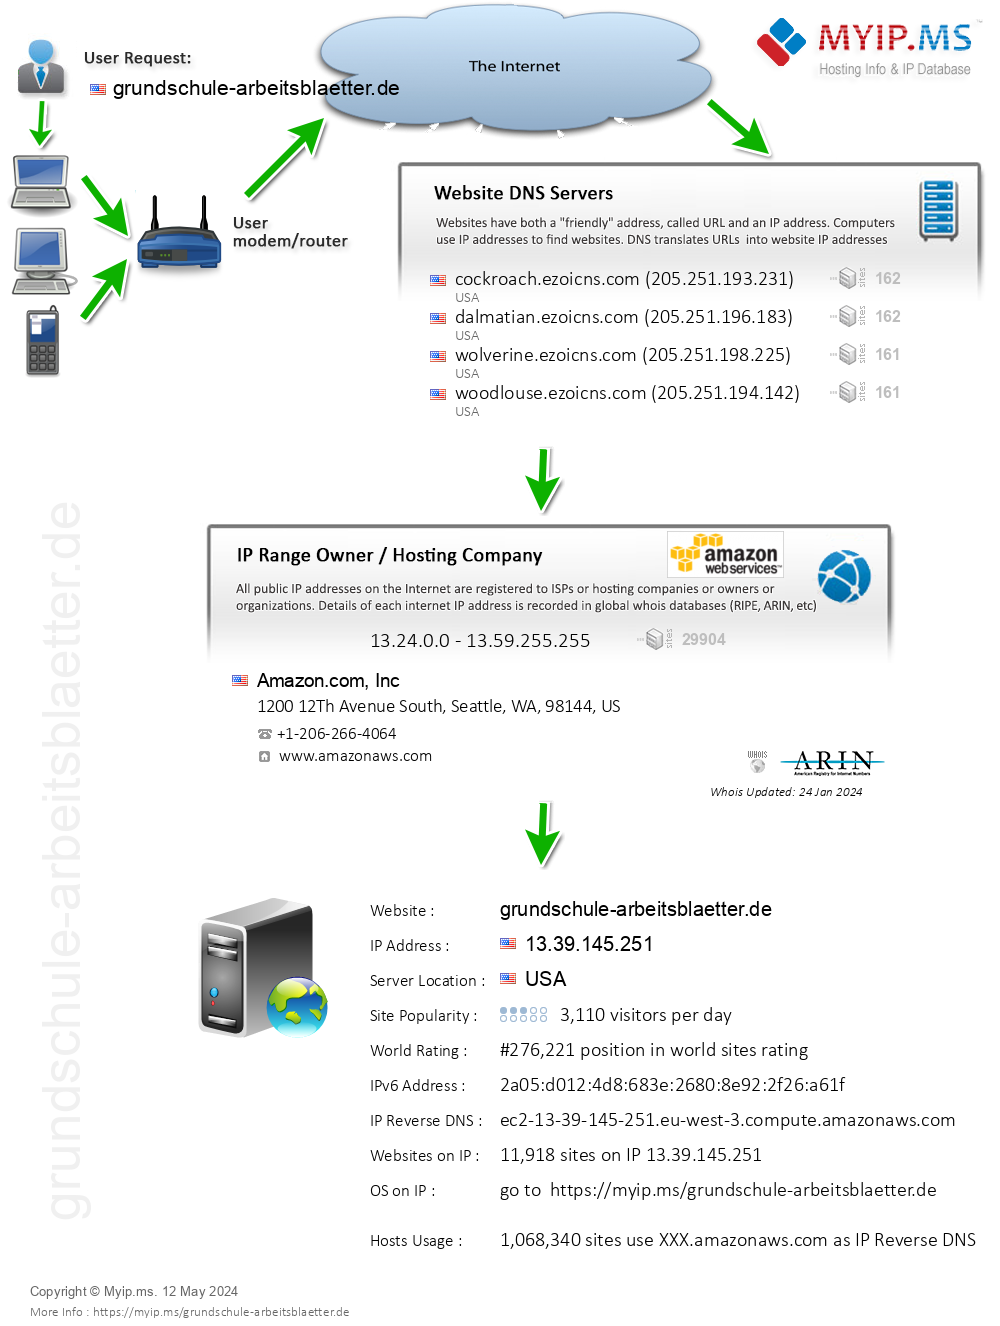 Grundschule-arbeitsblaetter.de - Website Hosting Visual IP Diagram